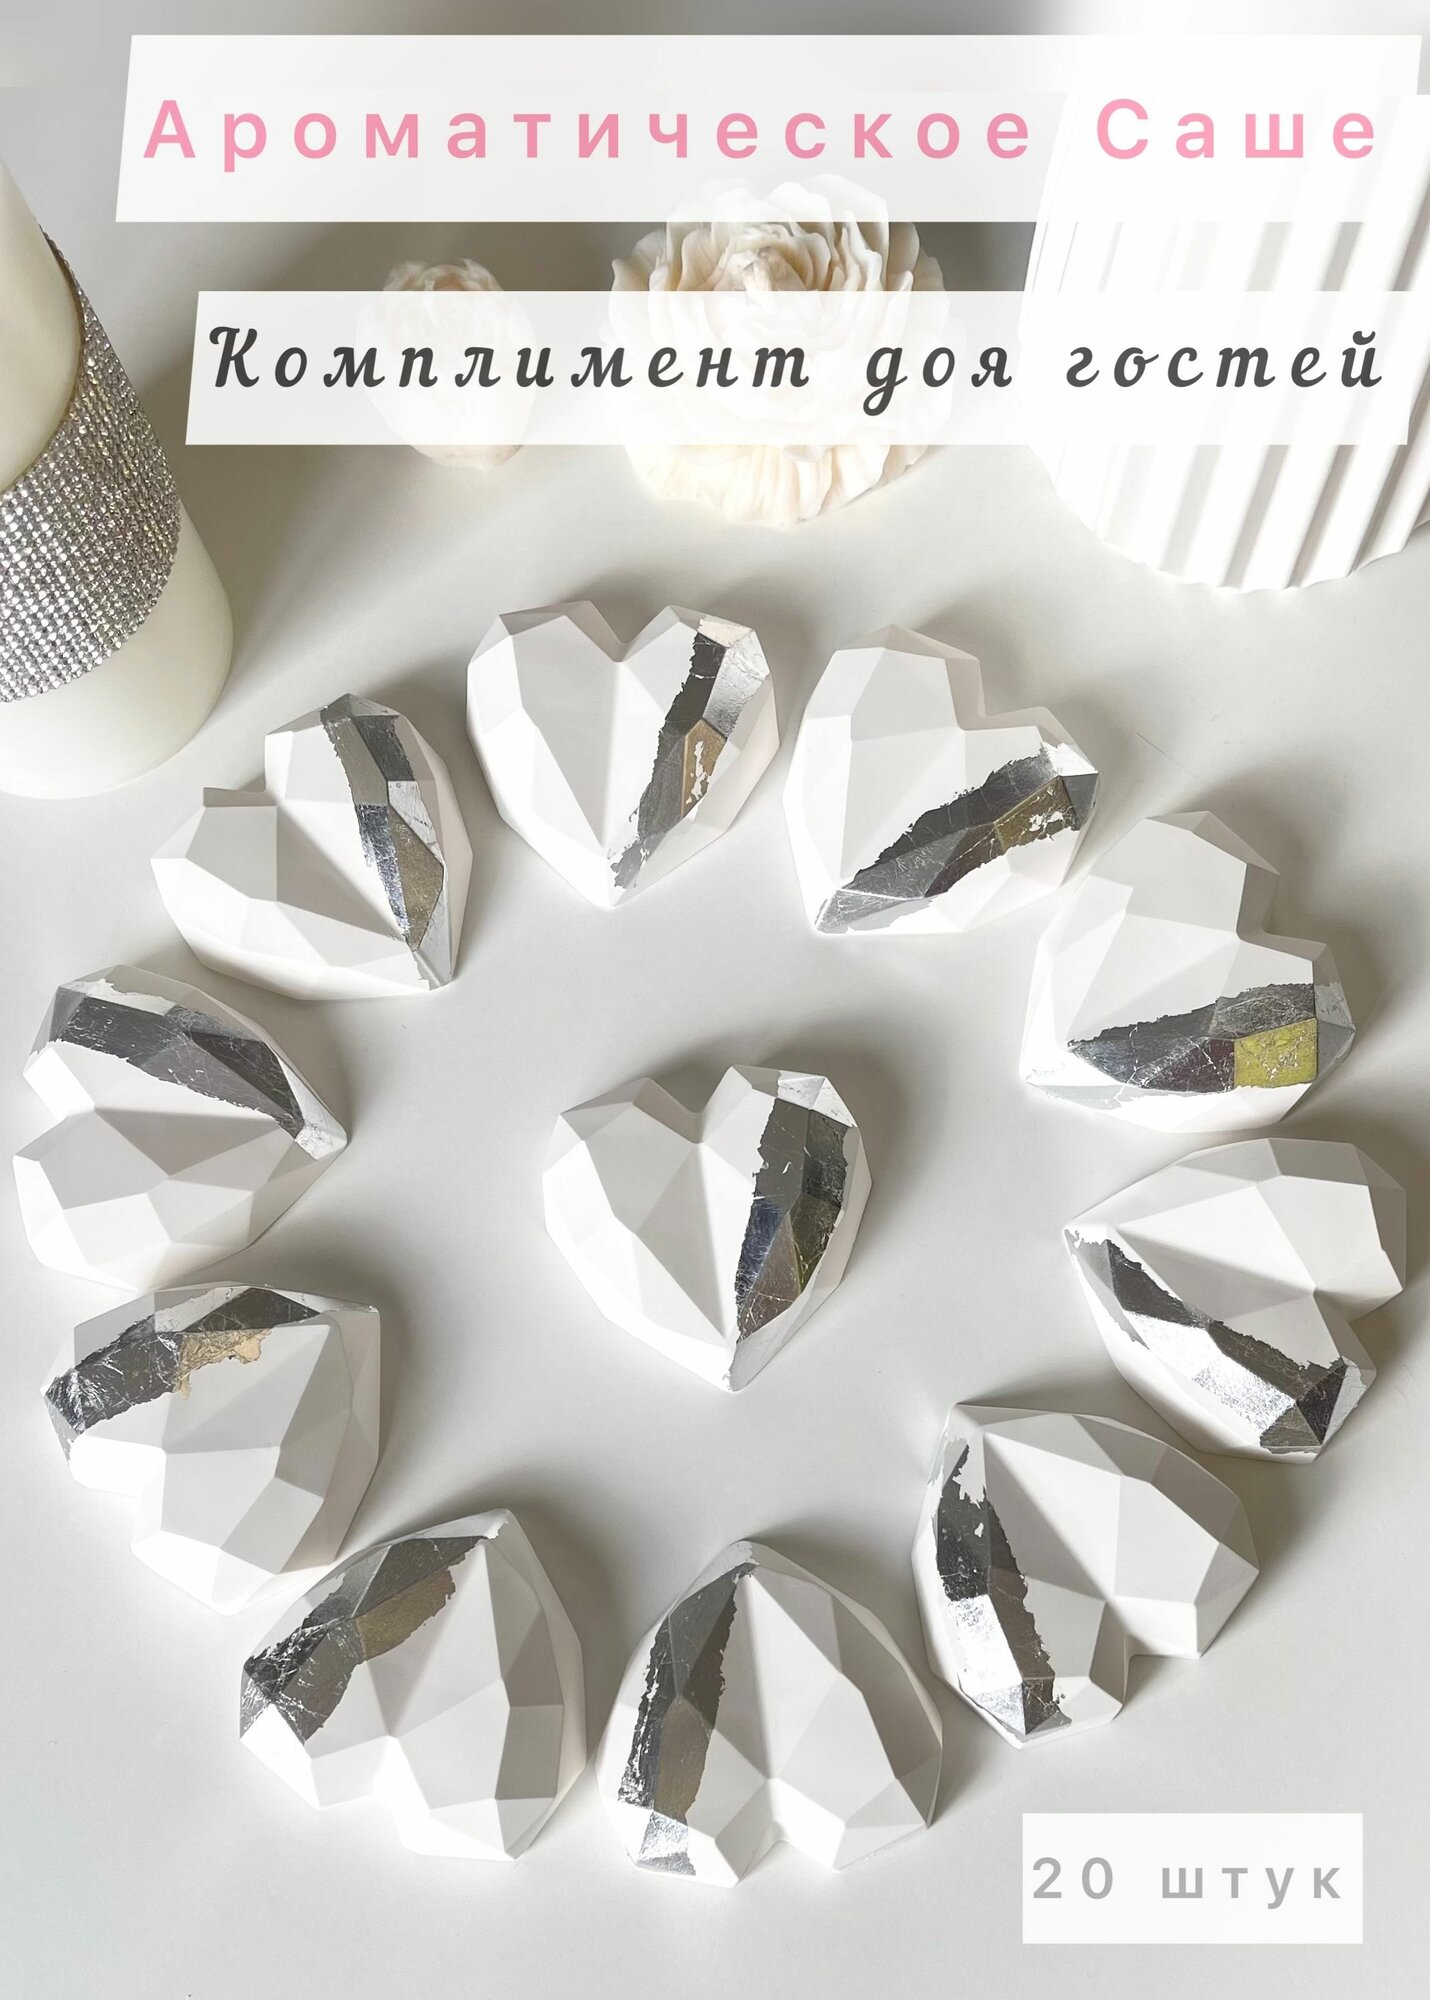 Свадебные подарки комплименты для гостей / Свадебные бонбоньерки белые с серебром 20 штук